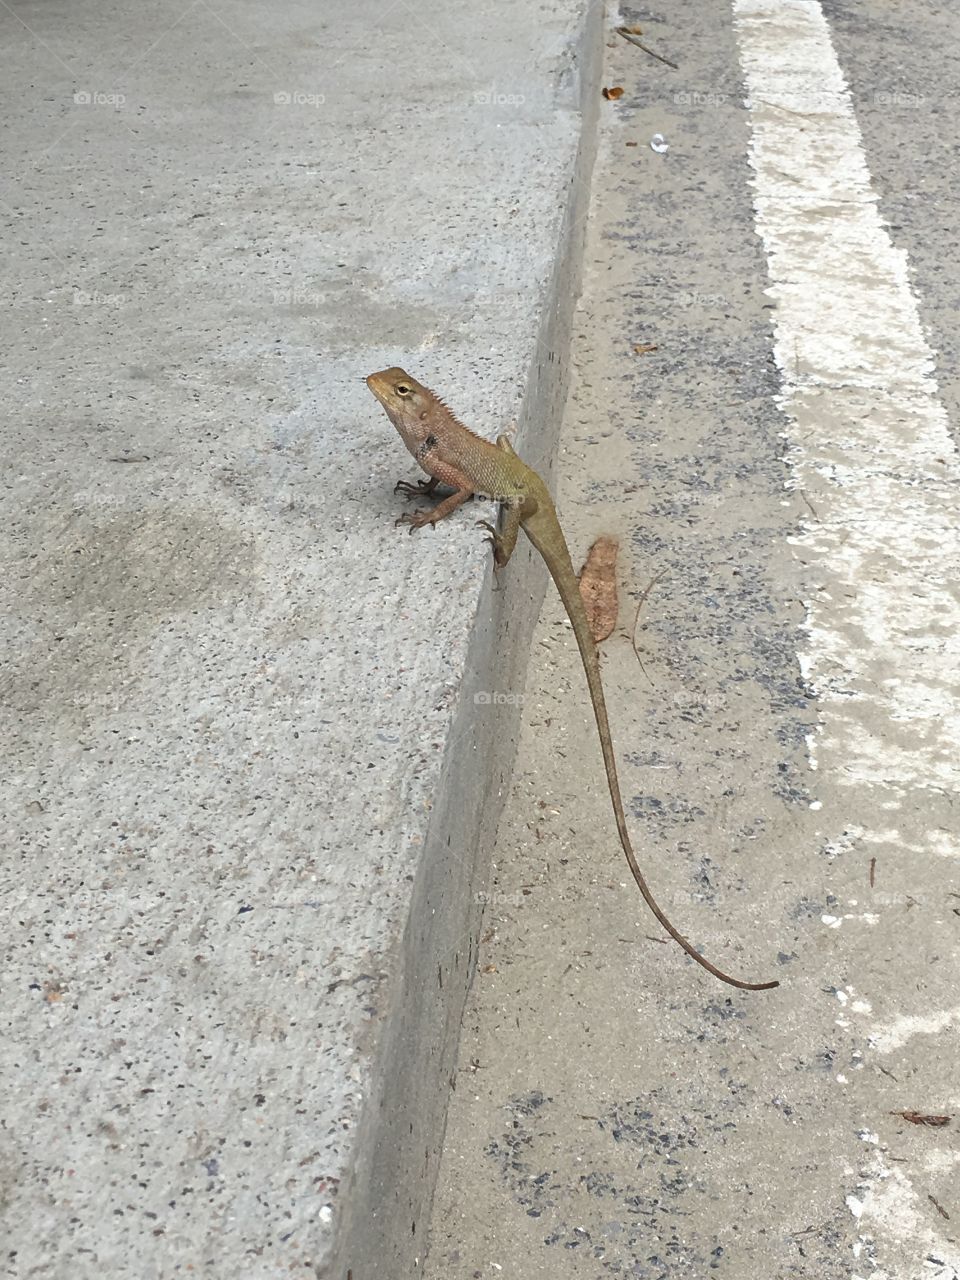 Lizard lizard lizard 🦎